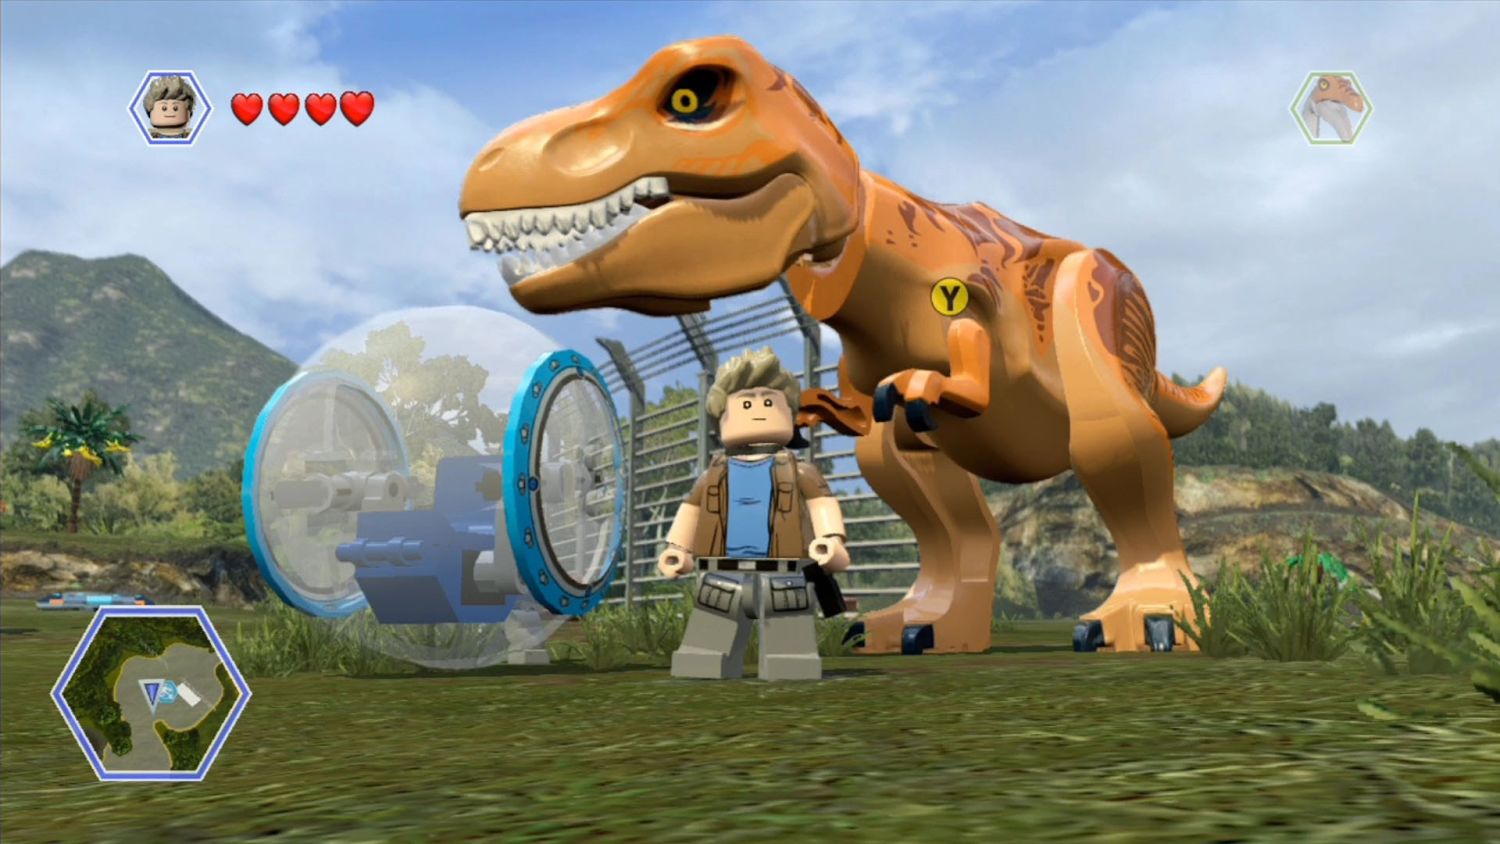 Jogo Lego Jurassic World PS4 Usado - Fazenda Rio Grande - Curitiba - Meu  Game Favorito